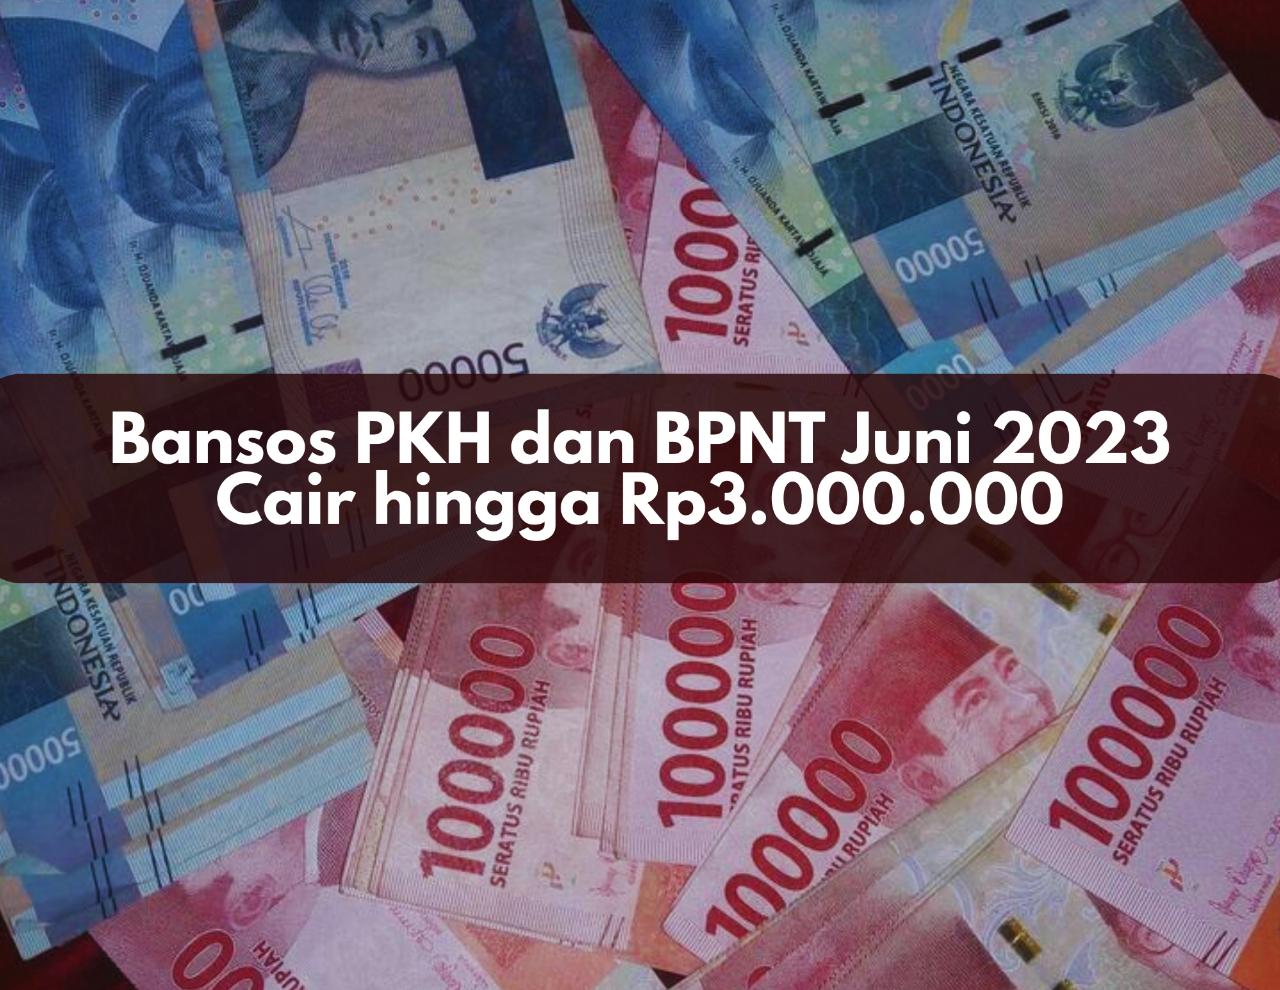 Siap-siap, Bansos PKH dan BPNT Juni 2023 Cair hingga Rp3.000.000, Cek Penerimanya!